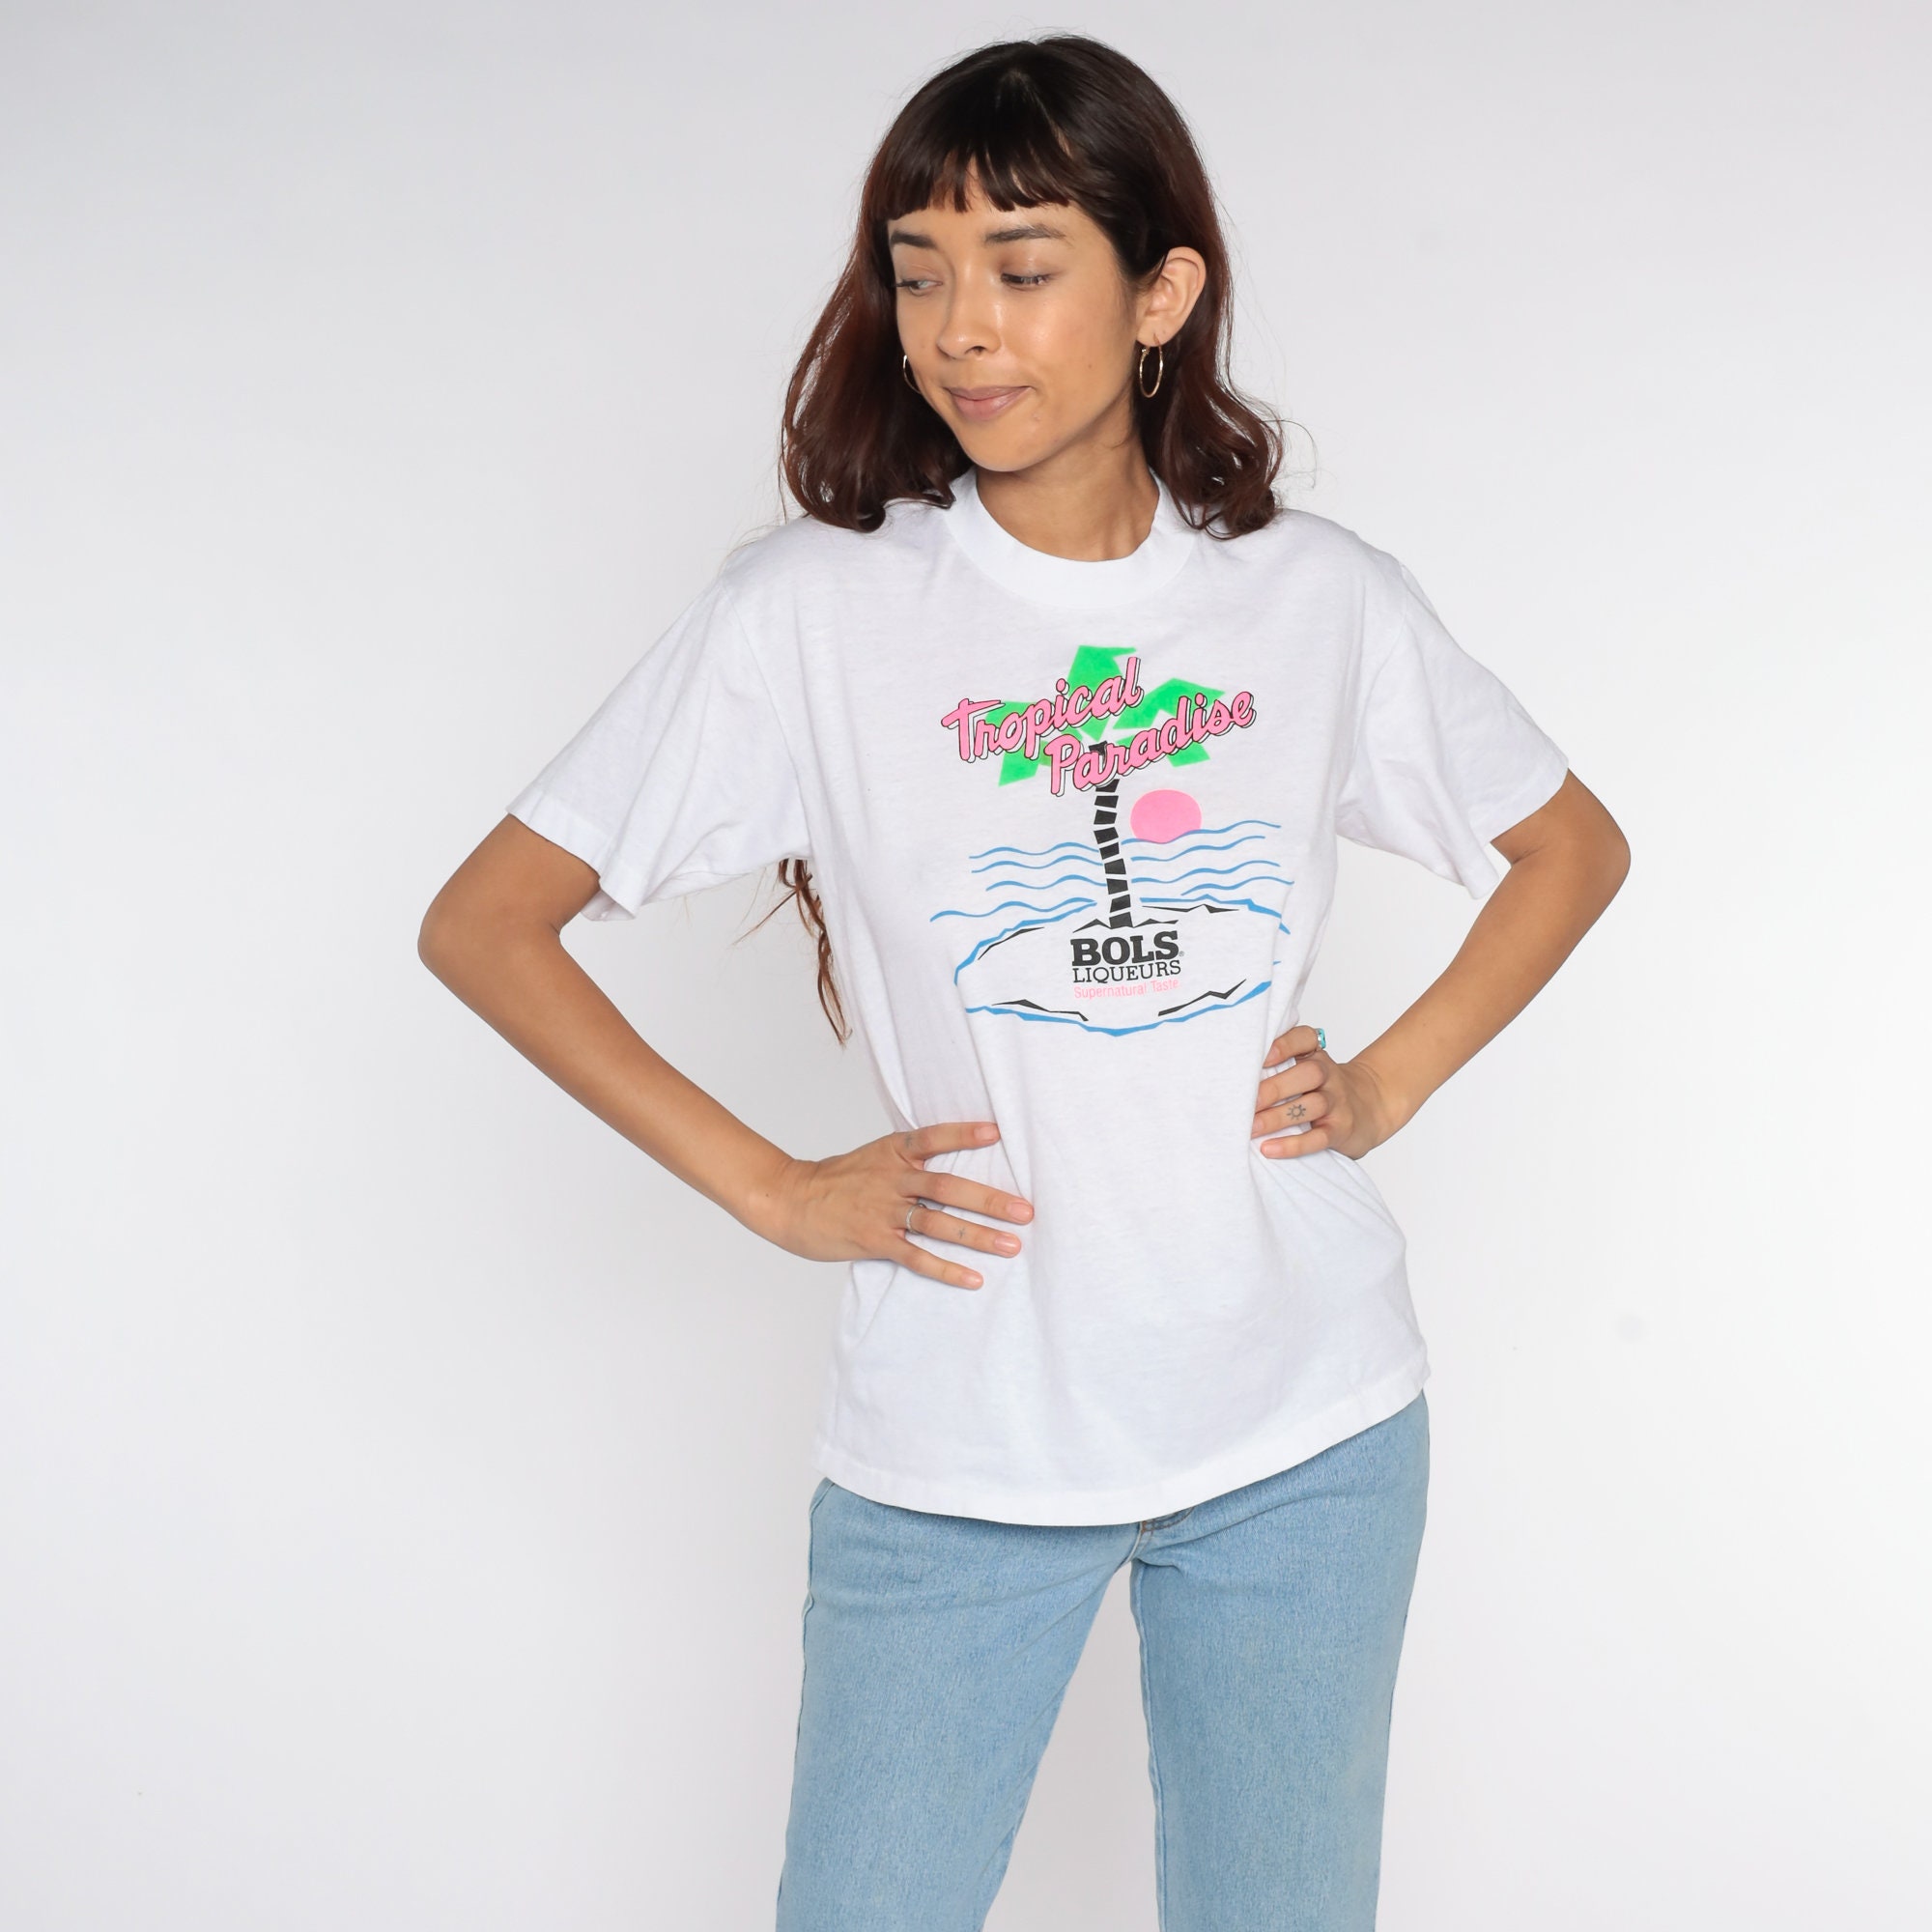 Bols Liqueur Shirt Tropical Paradise Liquor Tshirt 80s Neon Palm Tree ...